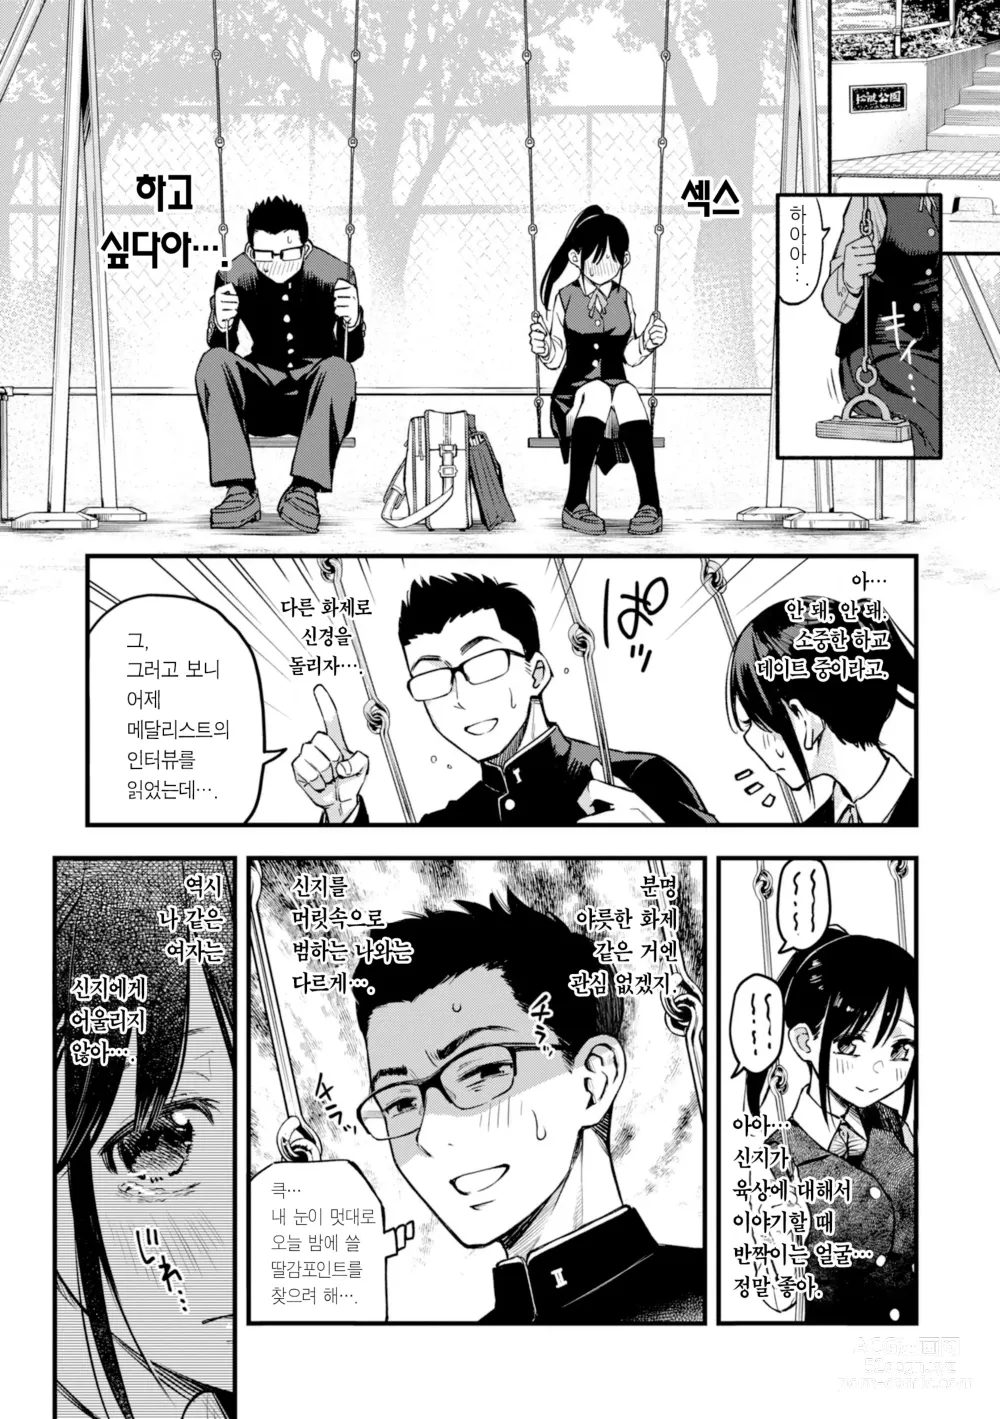 Page 17 of manga 처녀는 발정나면 안 되나요? (decensored)